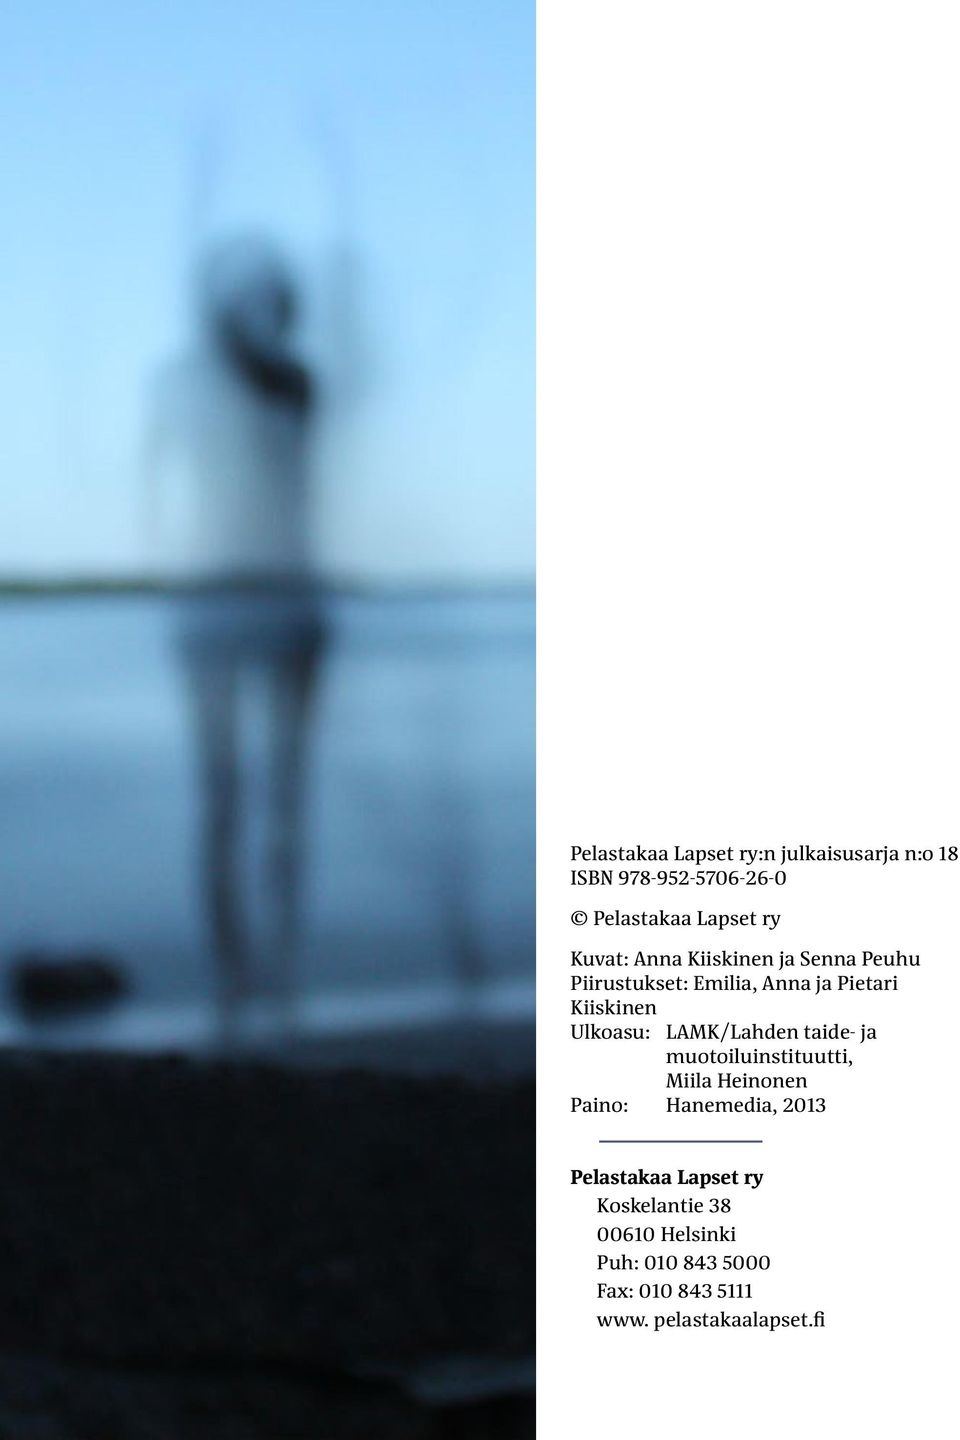 LAMK/Lahden taide- ja muotoiluinstituutti, Miila Heinonen Paino: Hanemedia, 2013 Pelastakaa